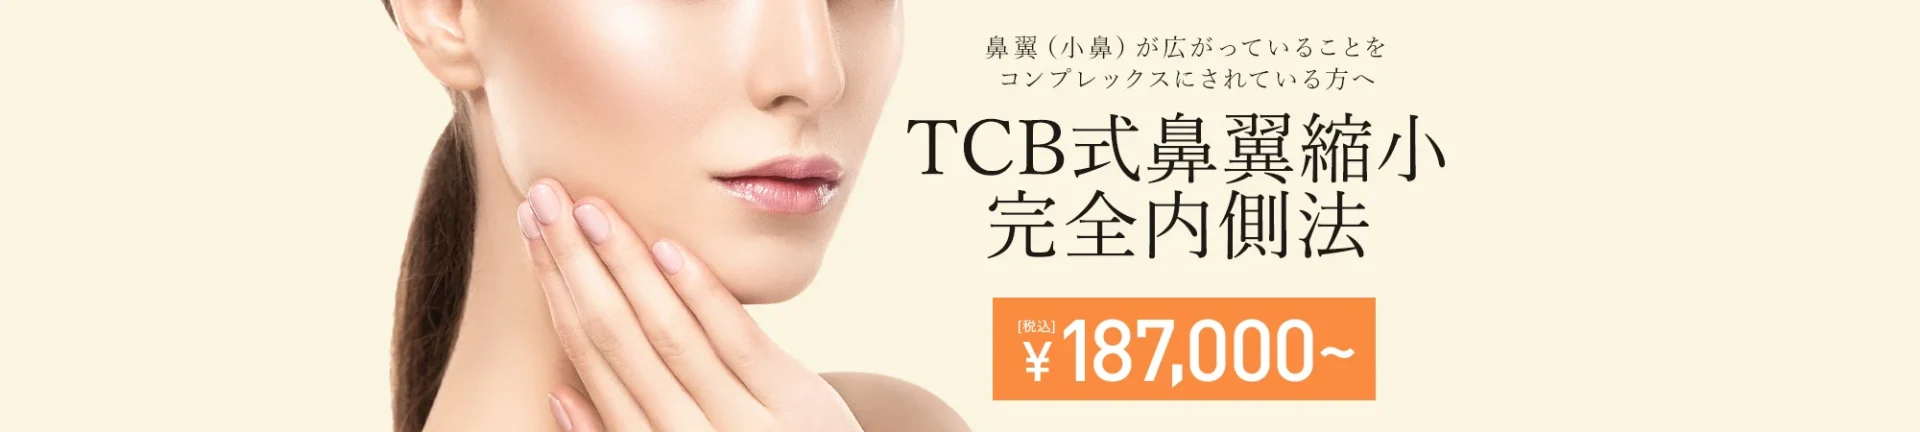 TBC東京中央美容外科 梅田大阪駅前院 TCB式鼻翼縮小完全内側法